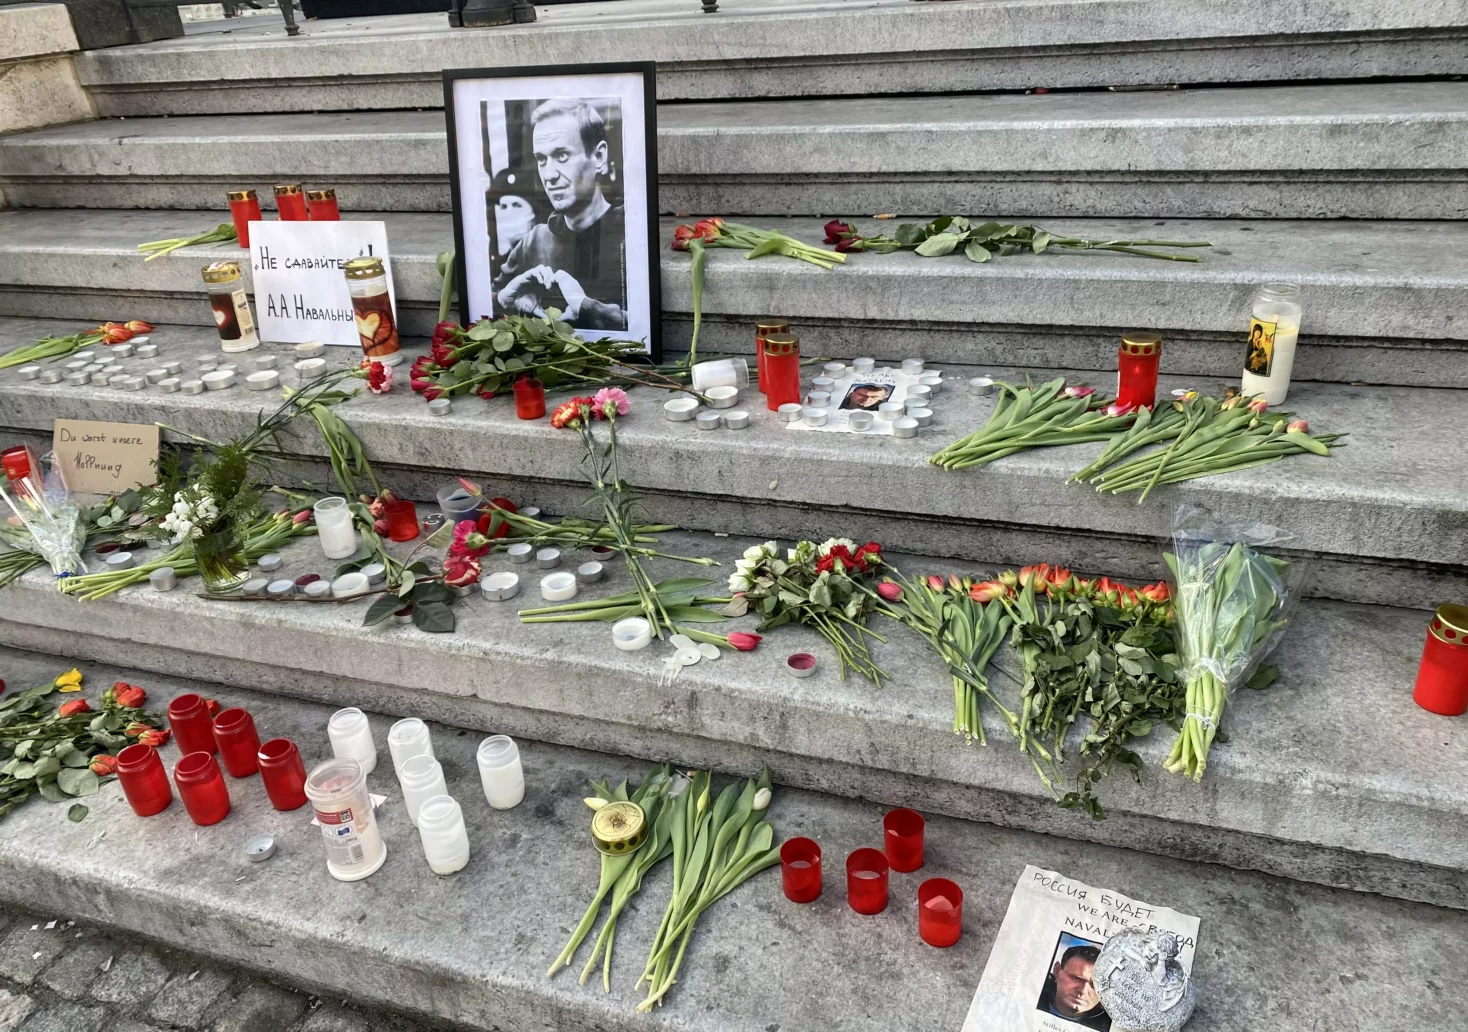 Foto auf 5min.at zeigt Blumen und Kerzen für Nawlany, die am Grazer Hauptplatz niedergelegt worden sind.